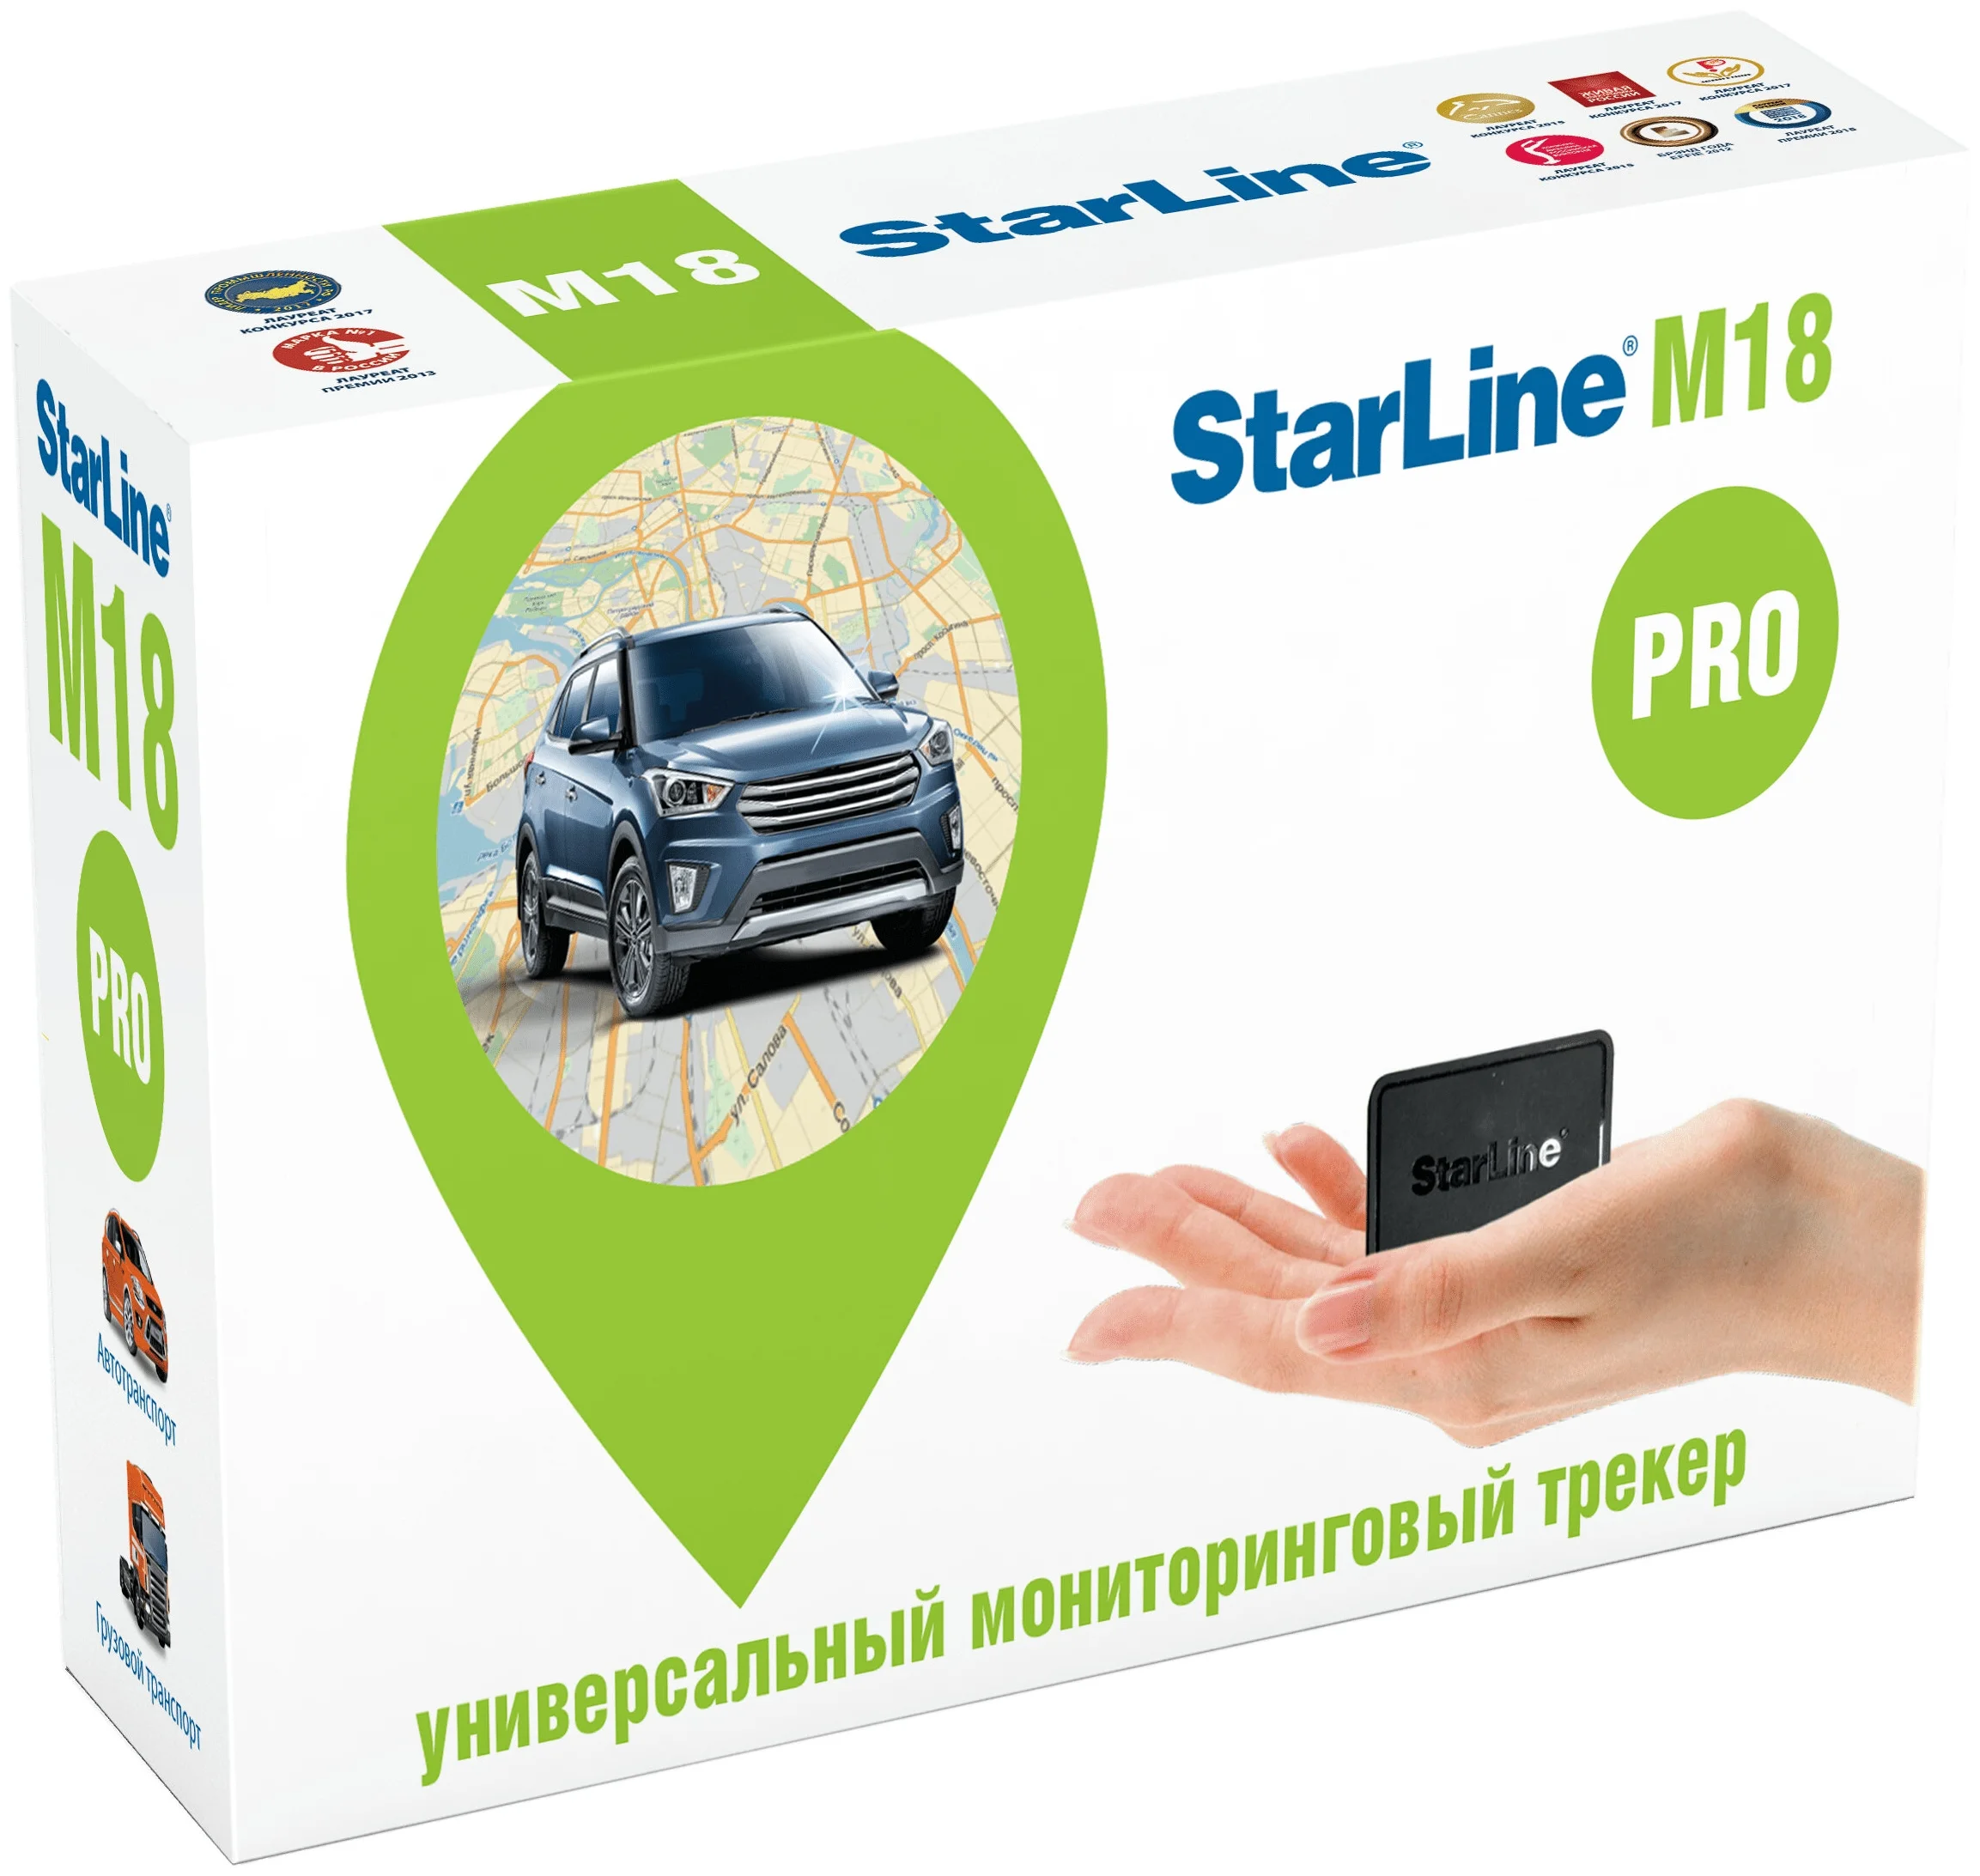 StarLine M18 Pro - назначение: автомобильный